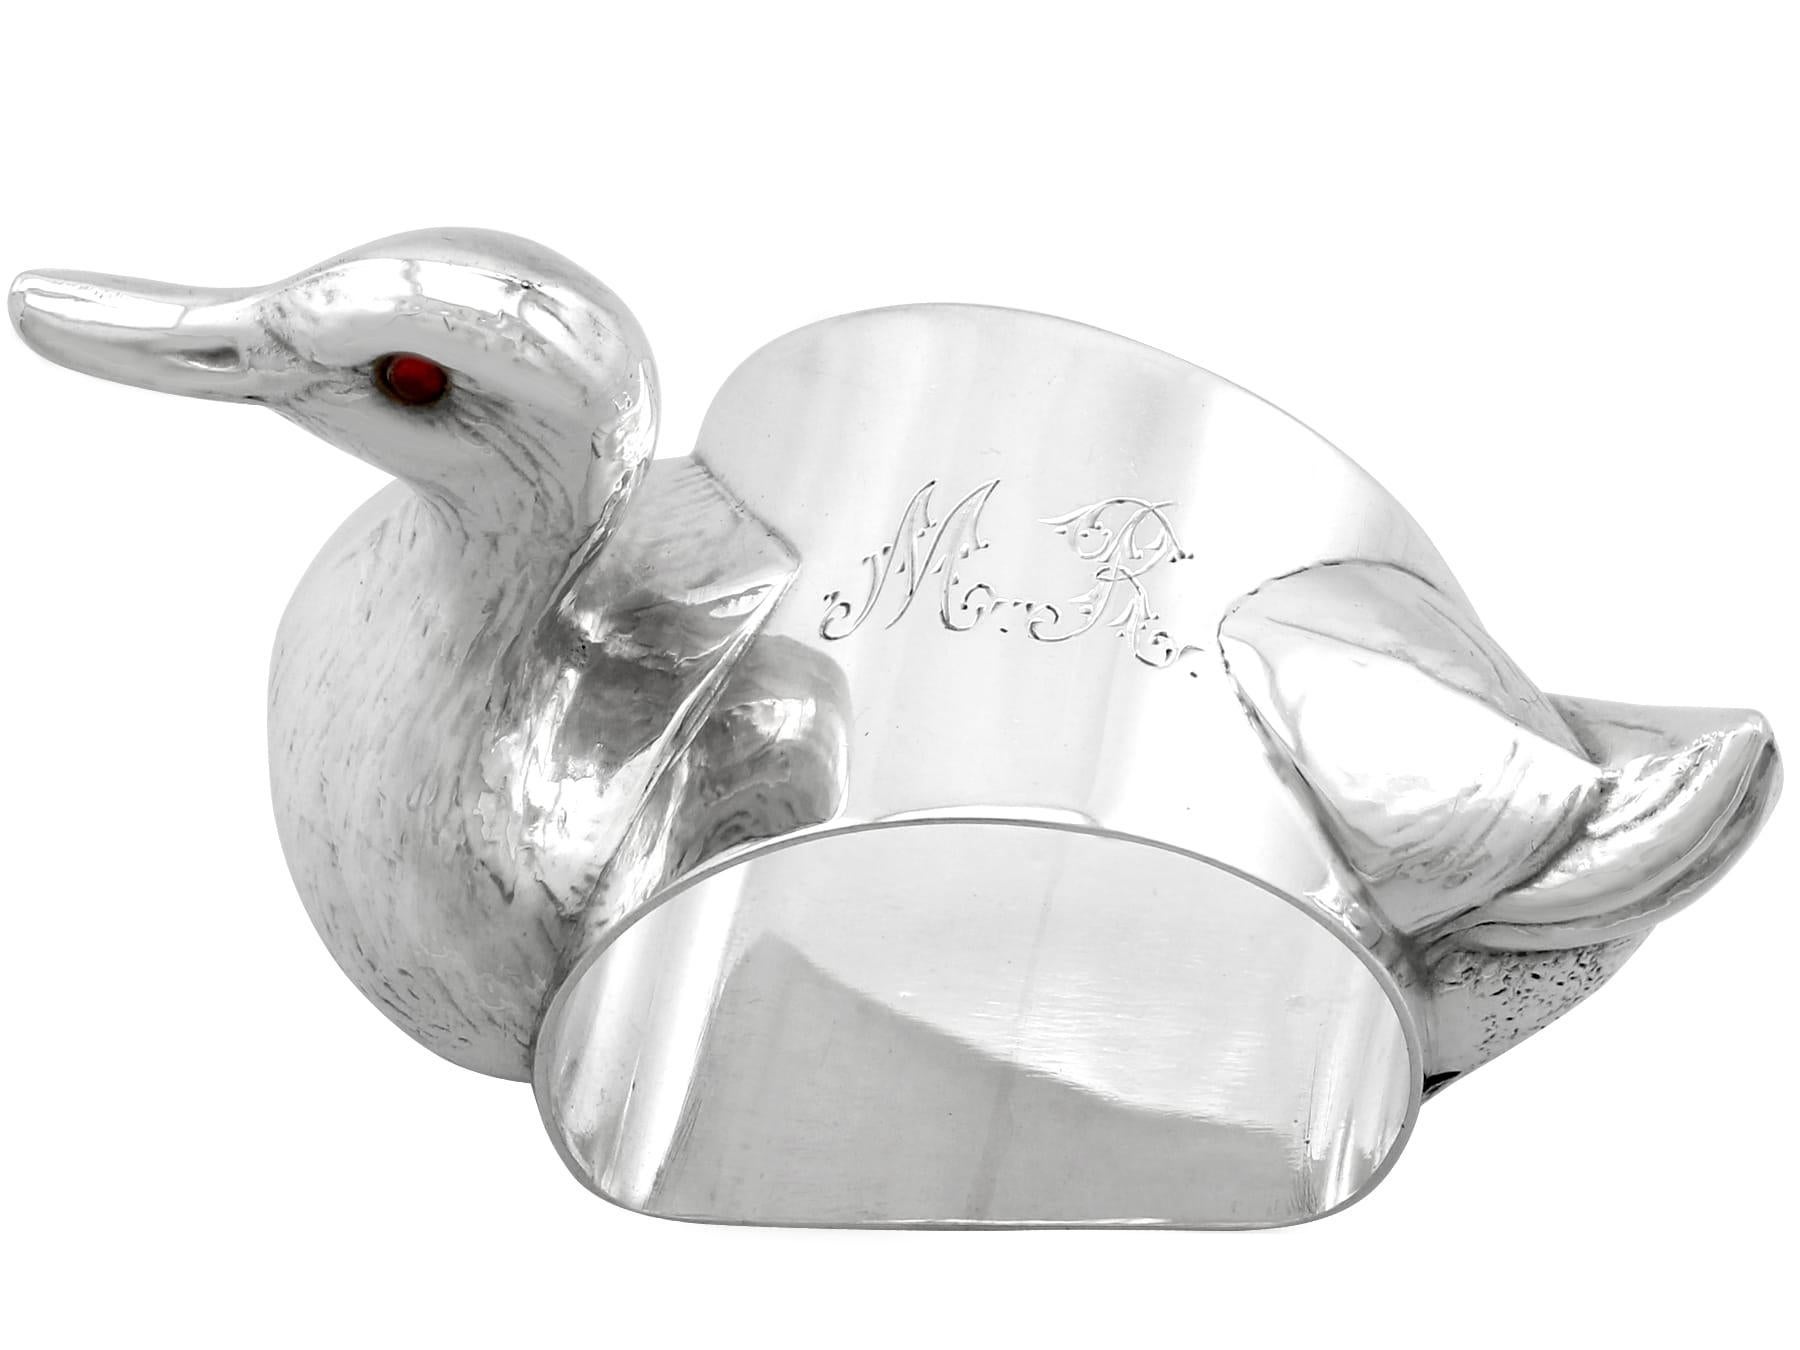 Eine außergewöhnliche, feine und beeindruckende antike George V Englisch Sterling Silber Ente Serviettenring; eine Ergänzung zu unserer Taufe Silberwaren Sammlung.

Dieser außergewöhnliche antike Serviettenring aus Sterlingsilber von Georg V. ist